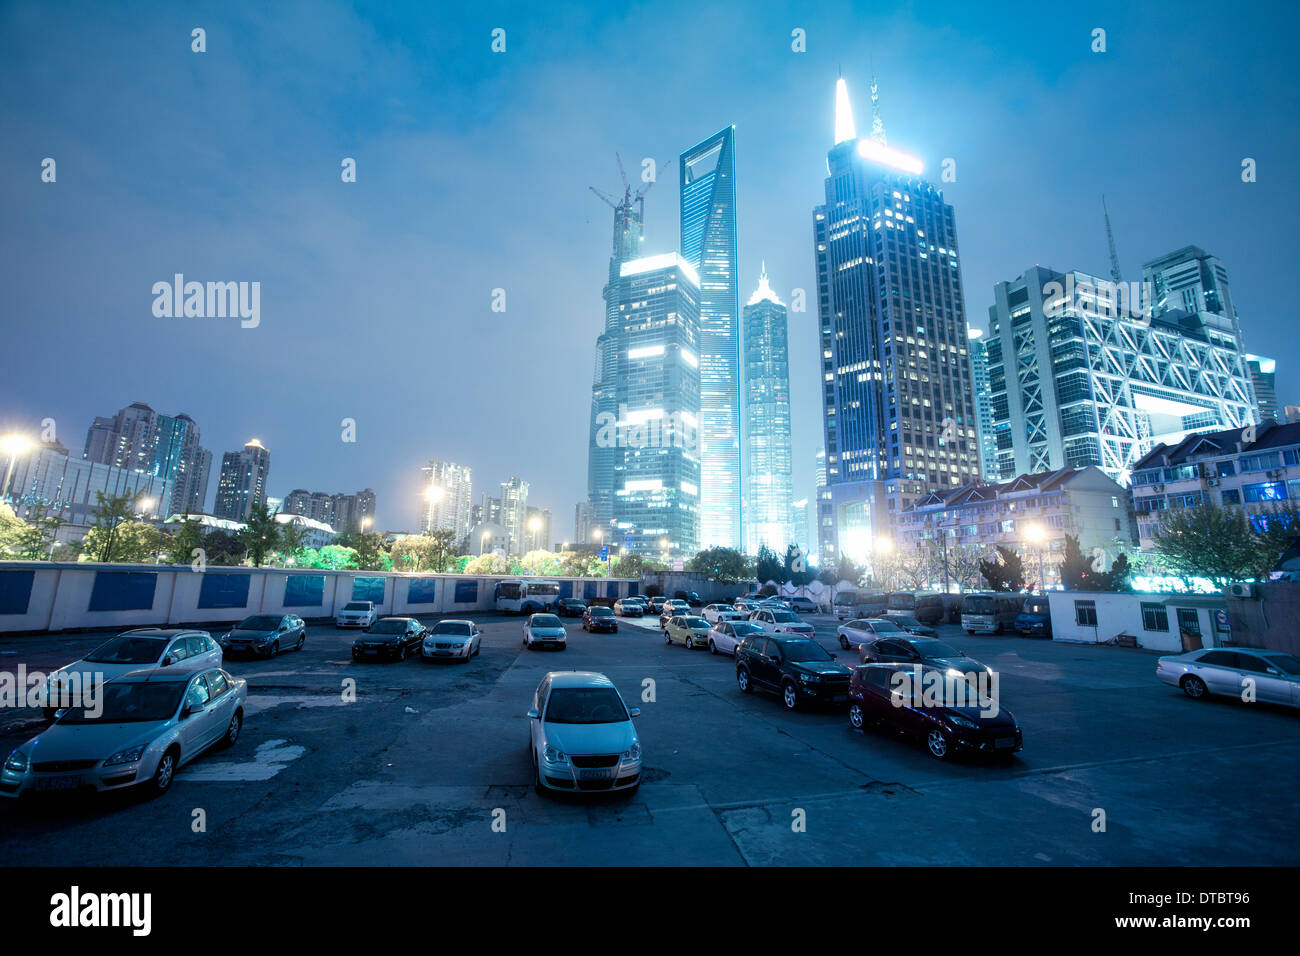 PKW-Parkplatz in shanghai Nachtansicht Stockfoto